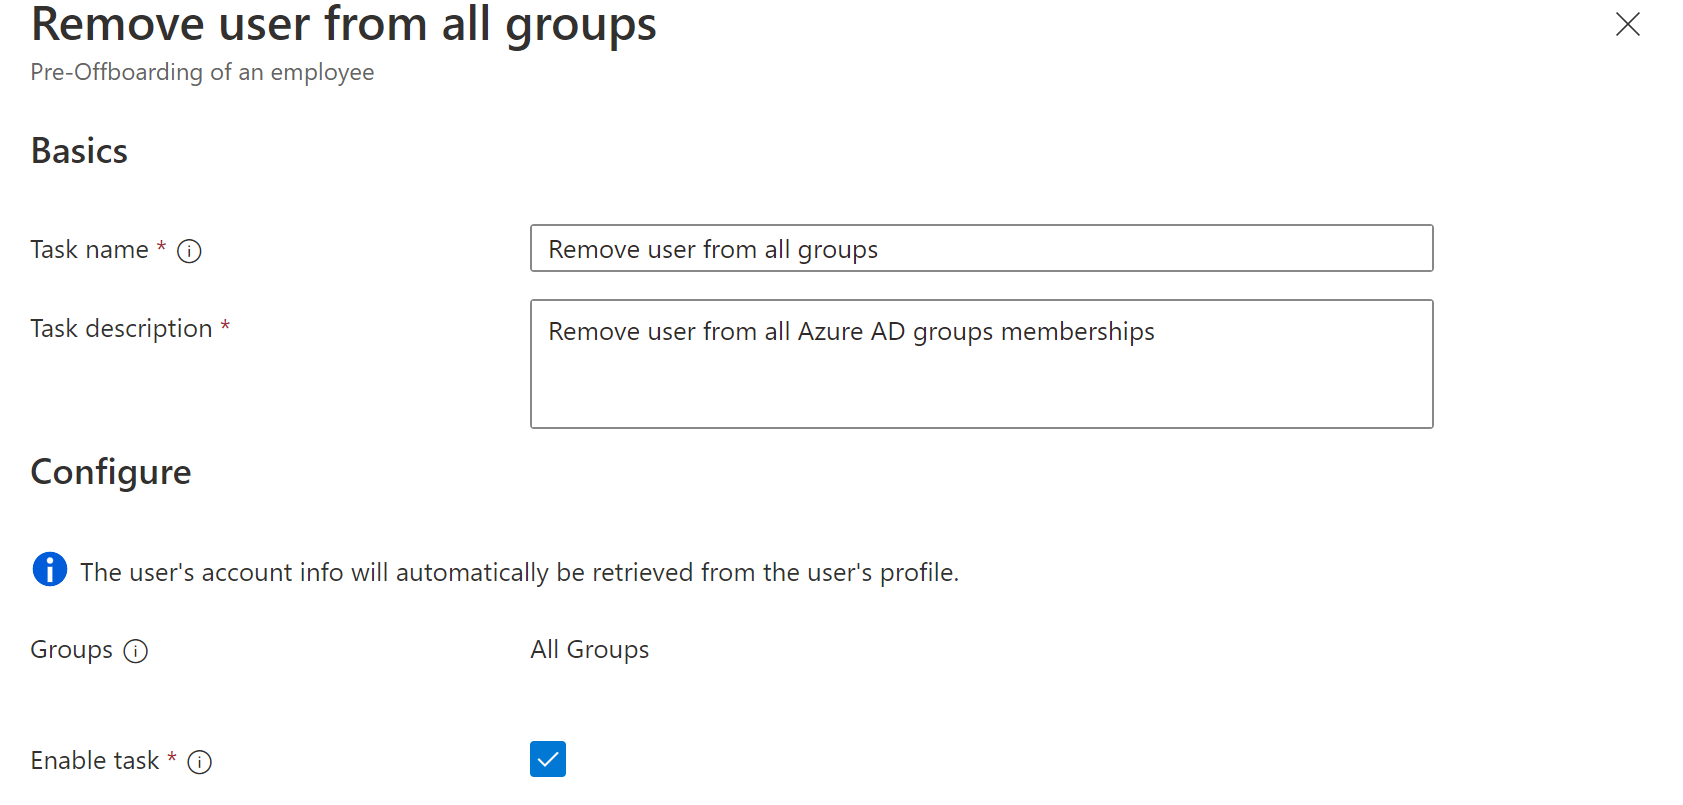 Снимок экрана задачи рабочего процесса: удаление пользователя из всех групп.